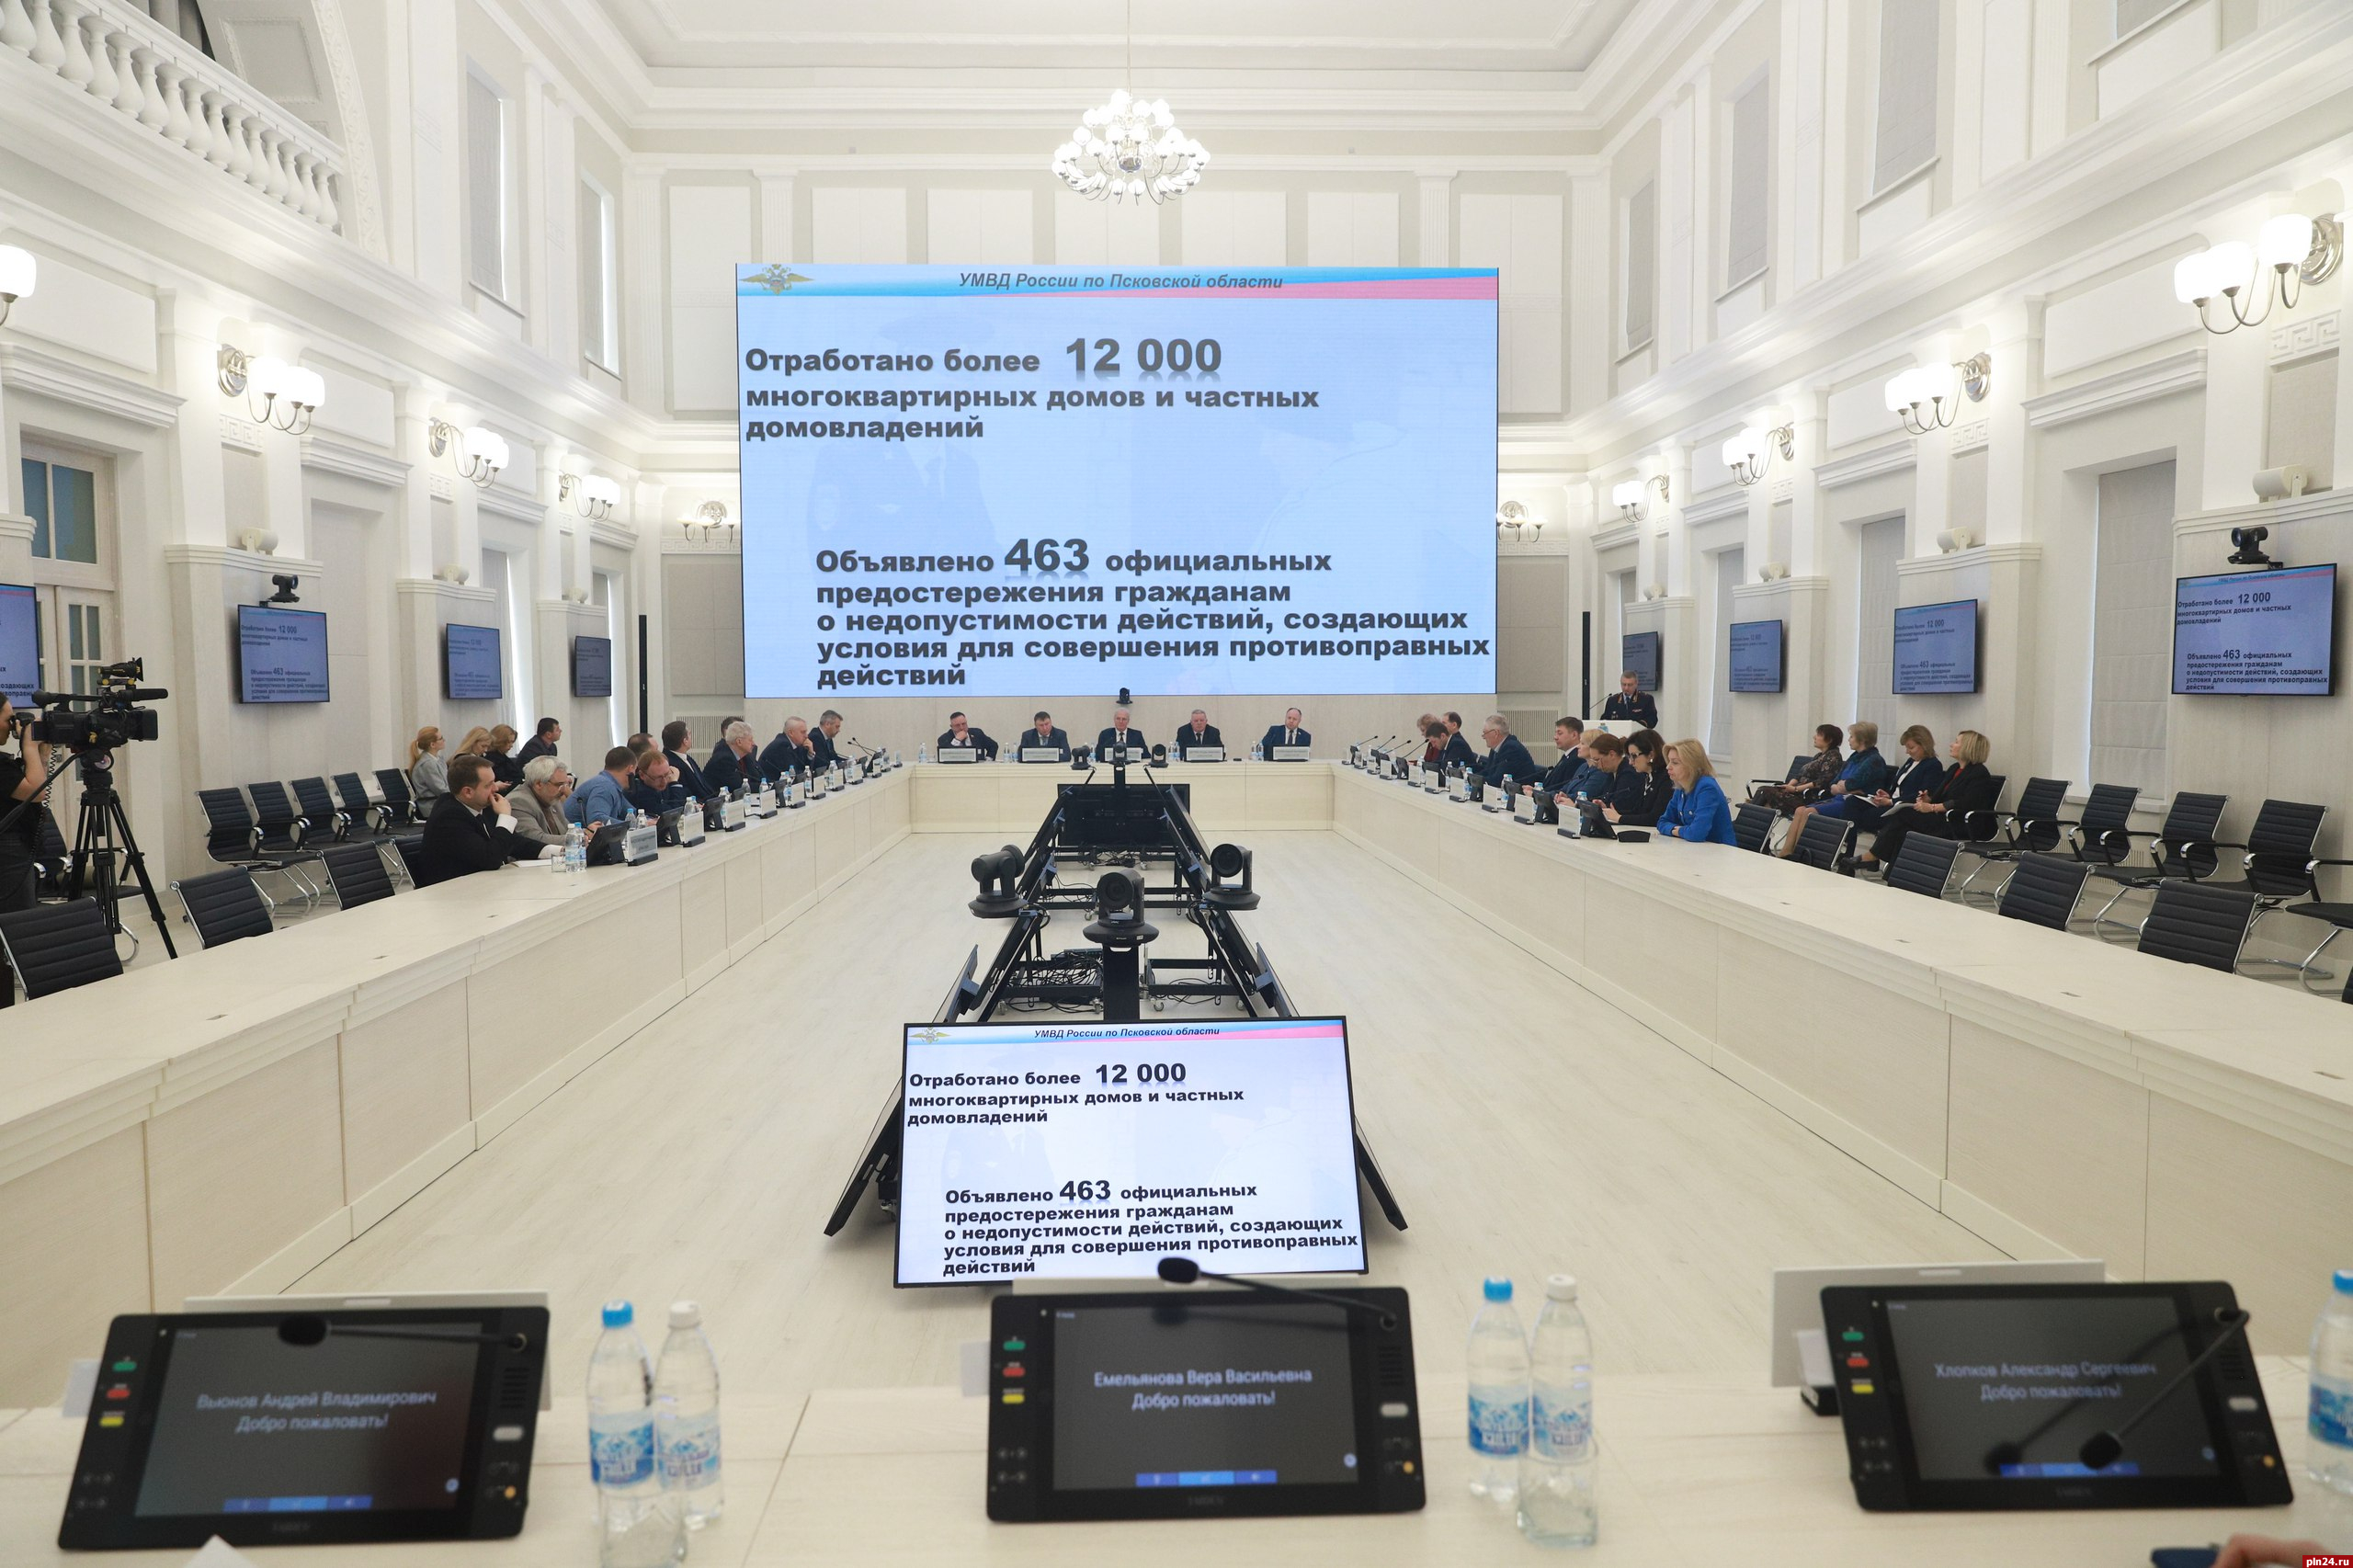 Переход на упрощенное проектирование несложных объектов газоснабжения поддержали псковские депутаты 